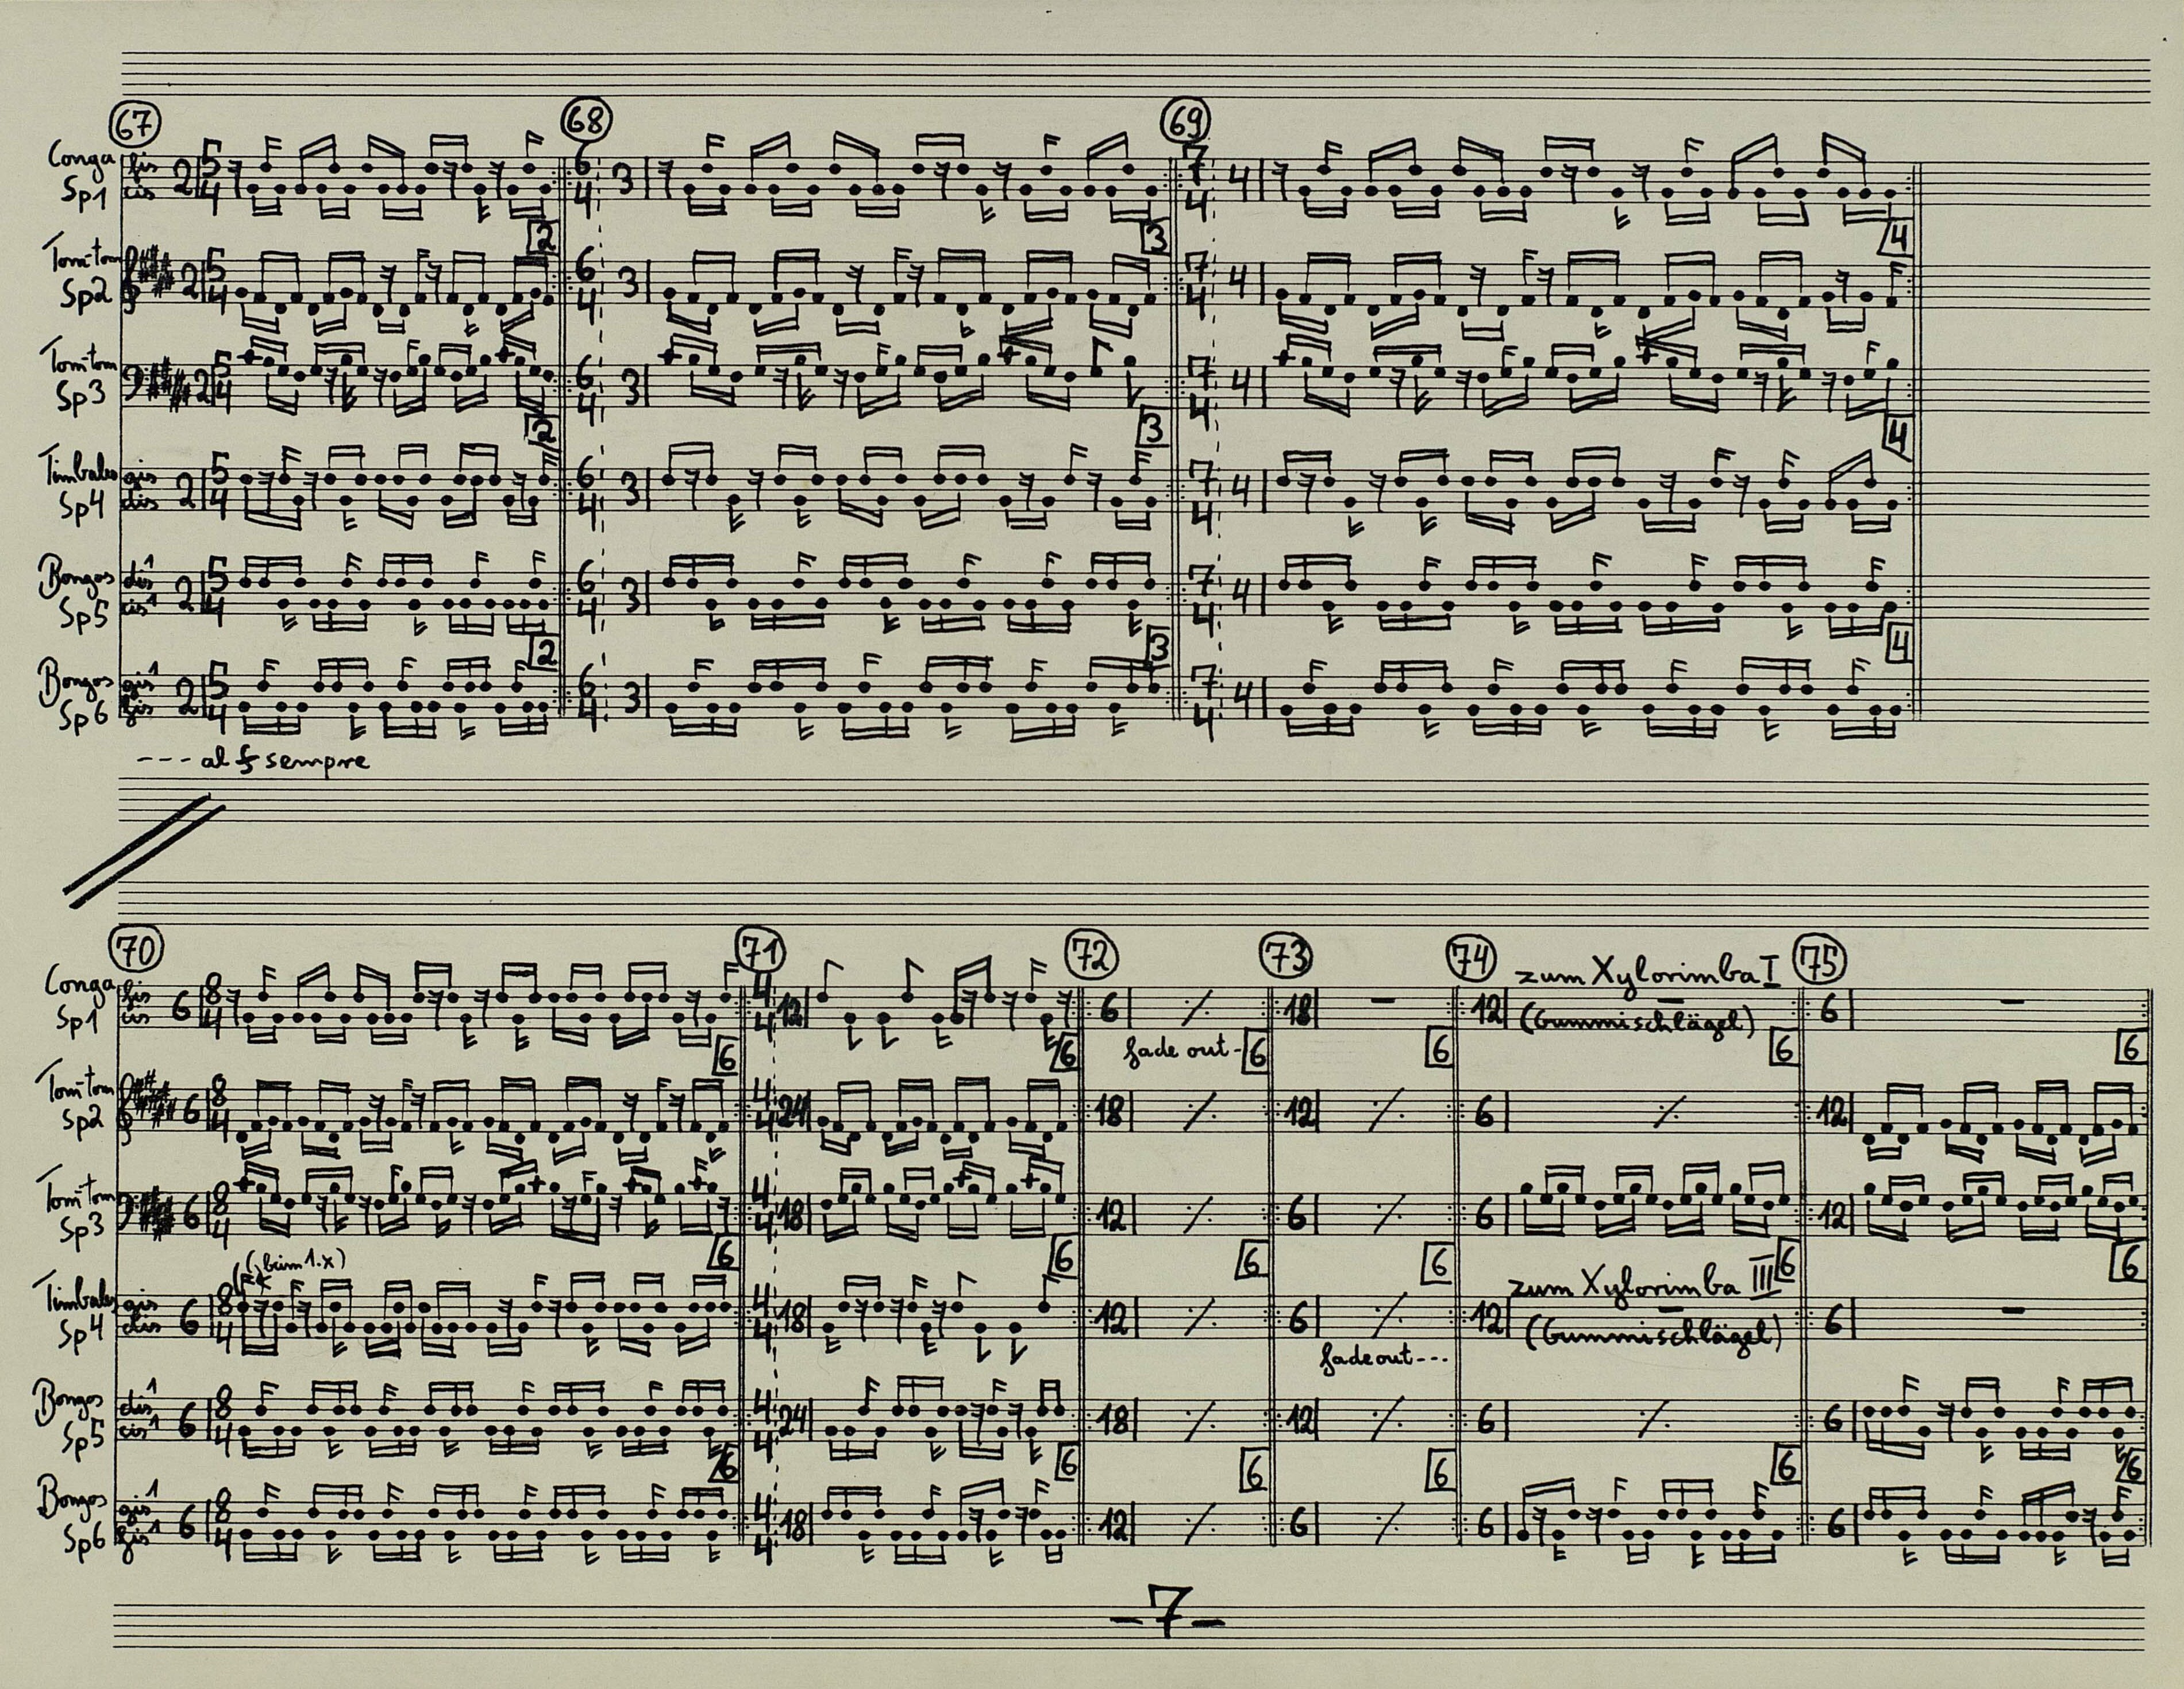 Rhizom II – Partitur, Ausschnitt aus der Partitur für den Peer Musikverlag